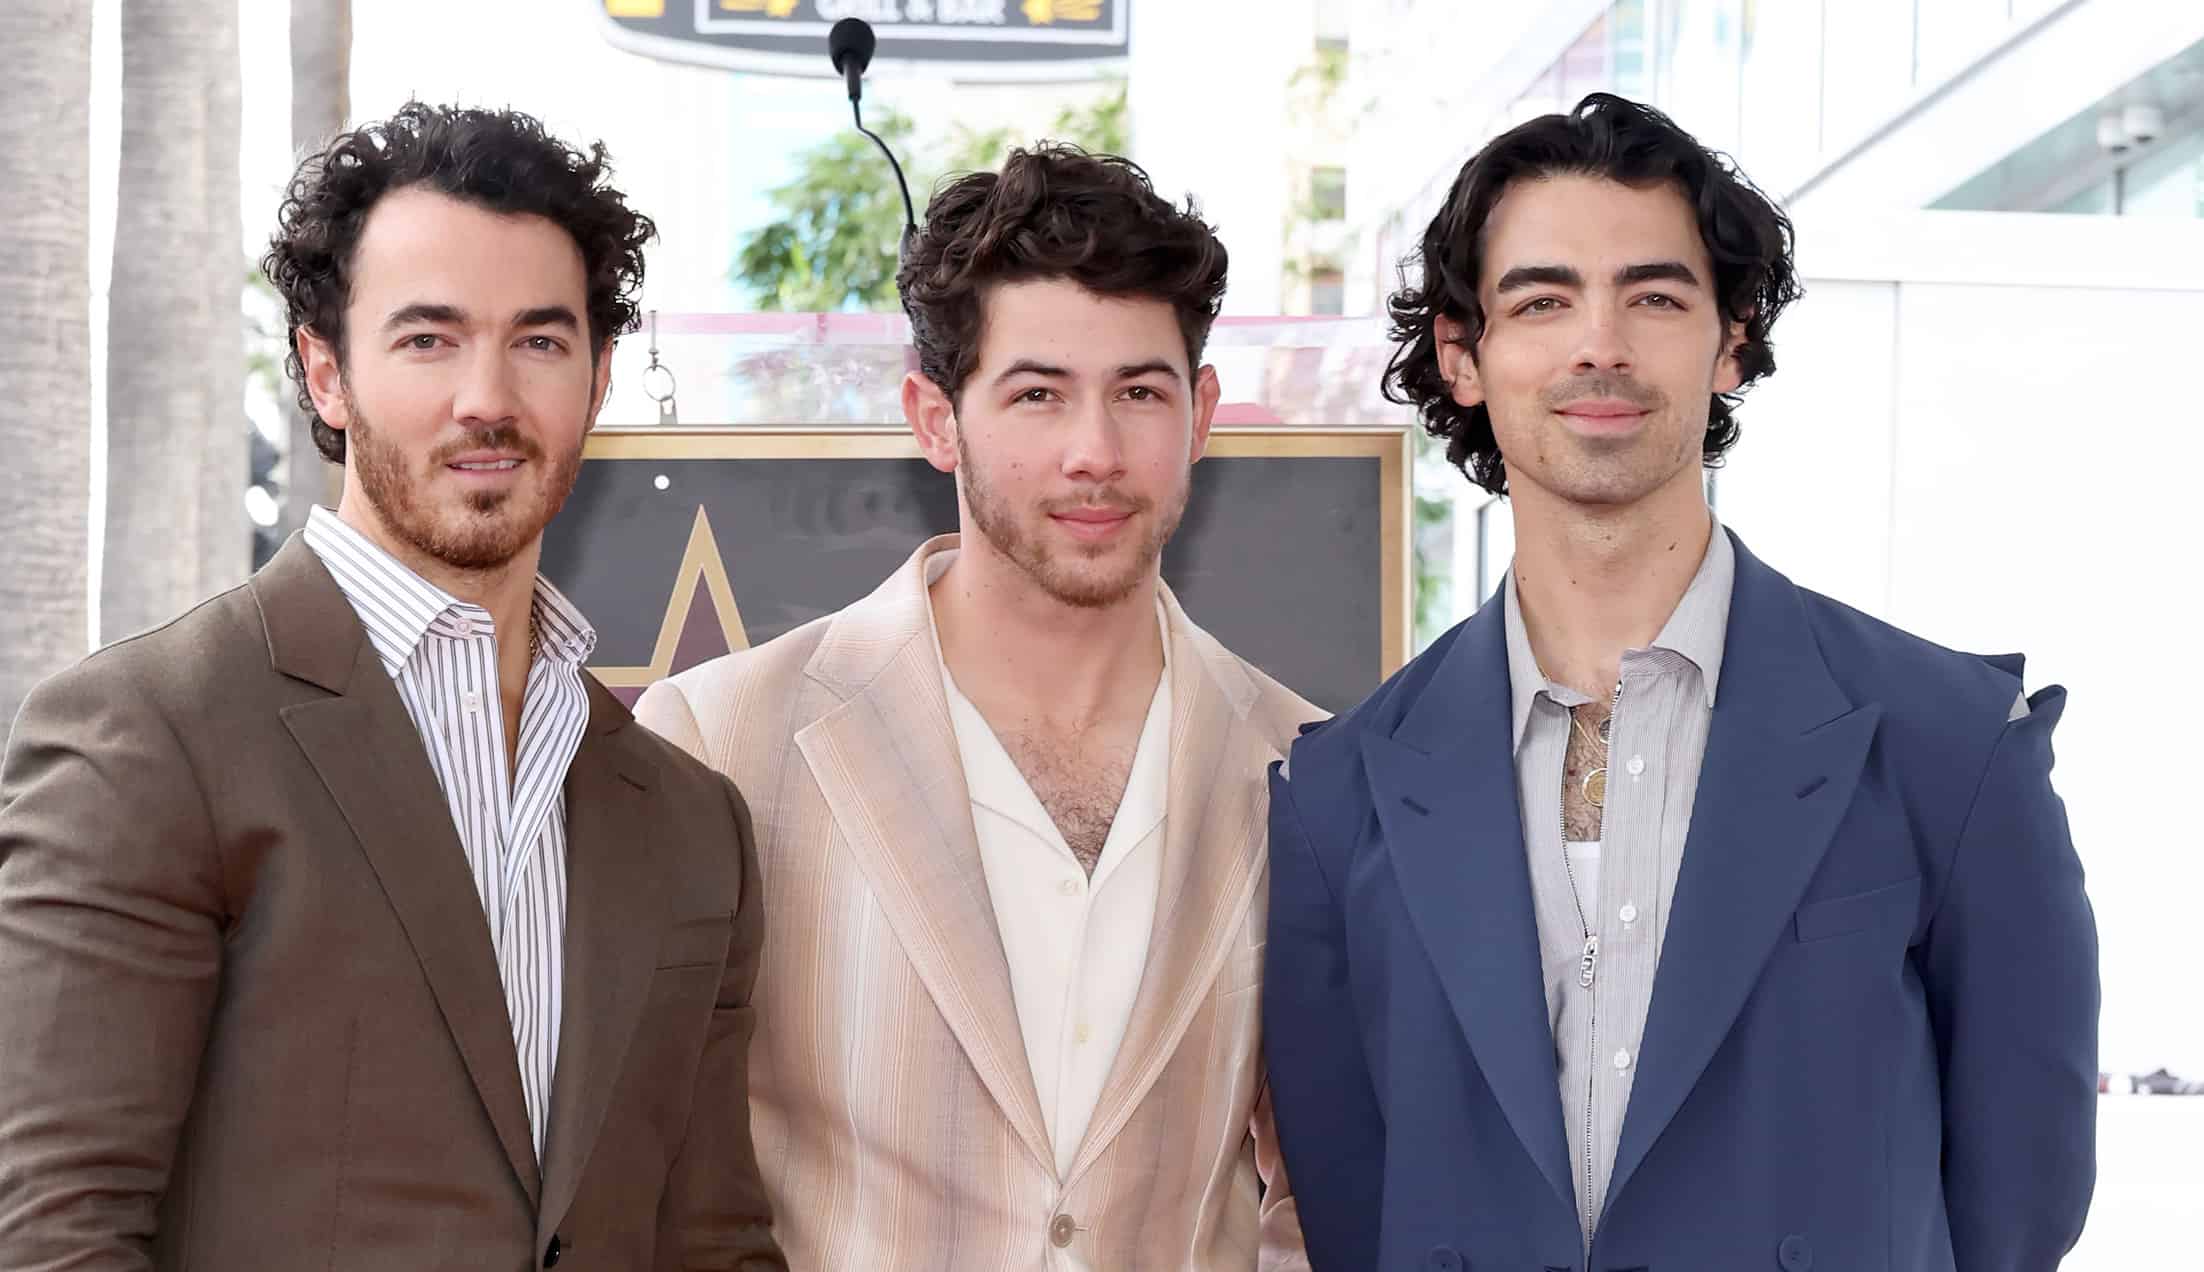 Valor neto de los Jonas Brothers: ¿Cuánto valen las ex estrellas de Disney?